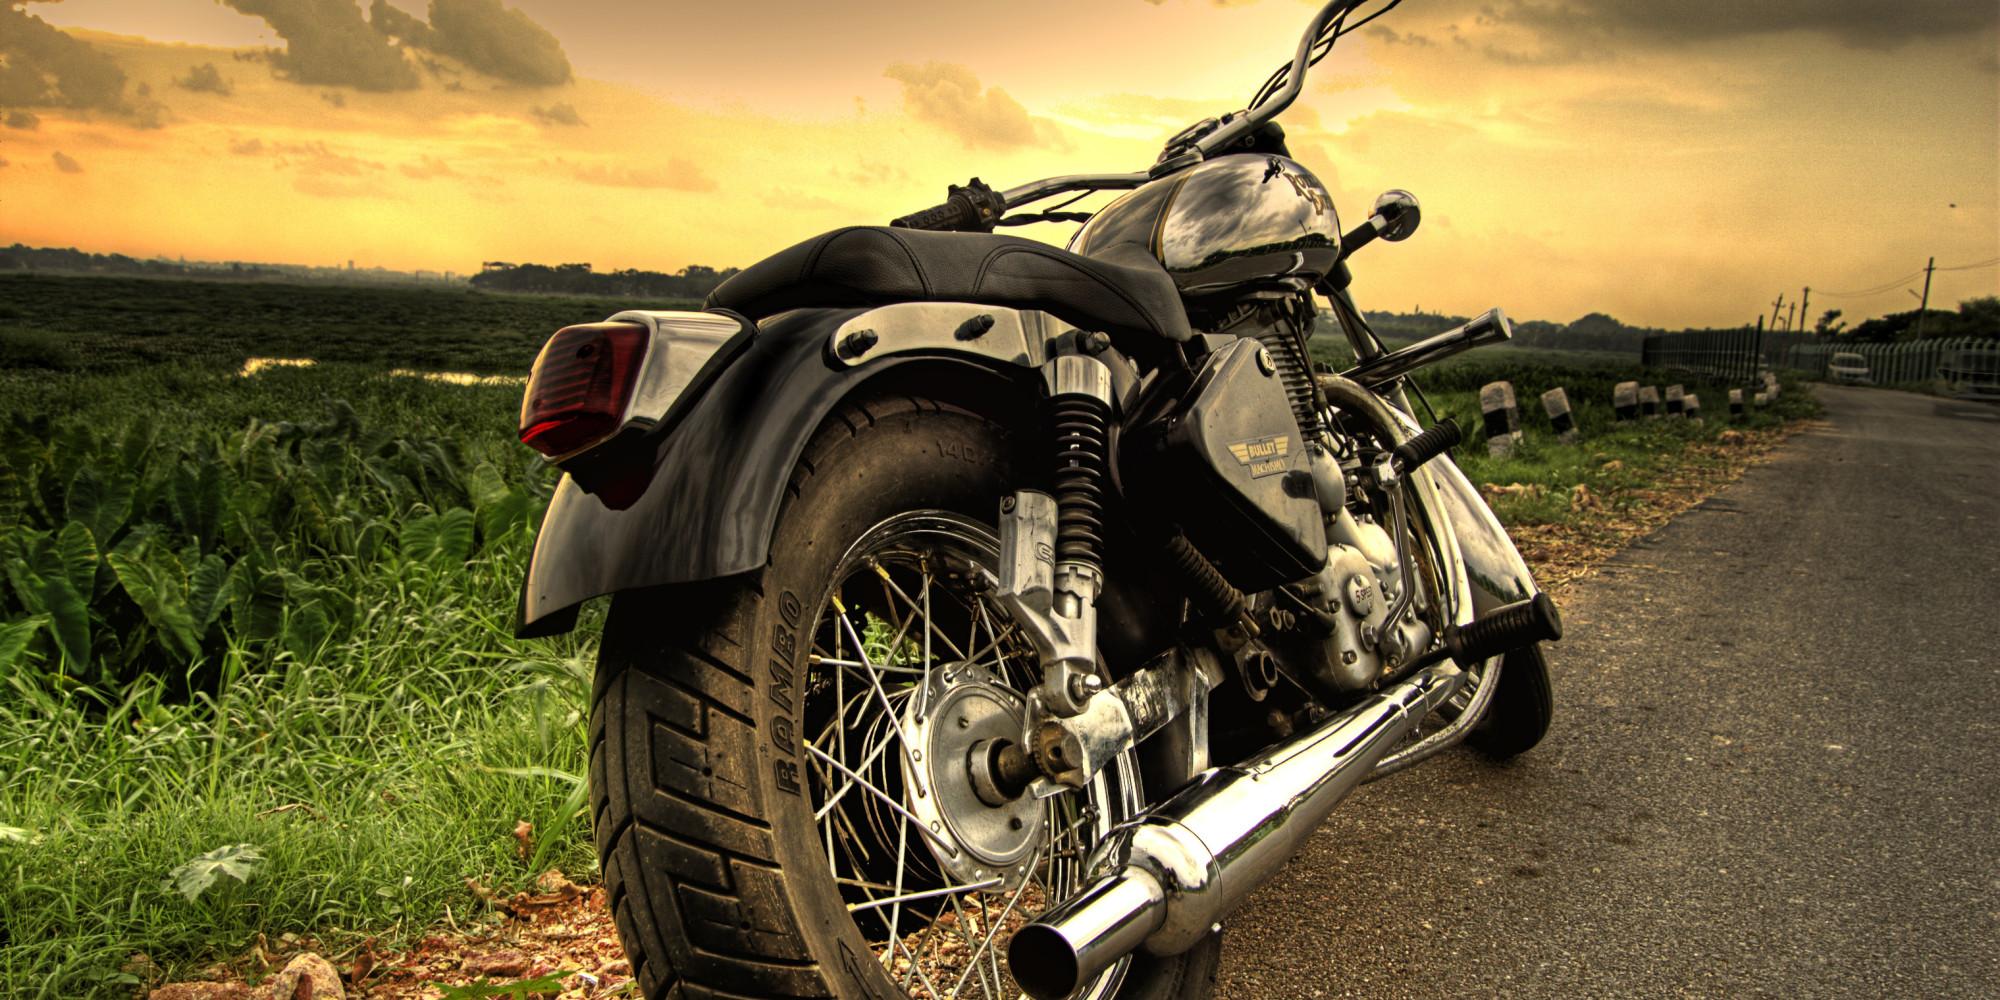 Royal Enfield Motorcycle Wallpapers | BadAssHelmetStore